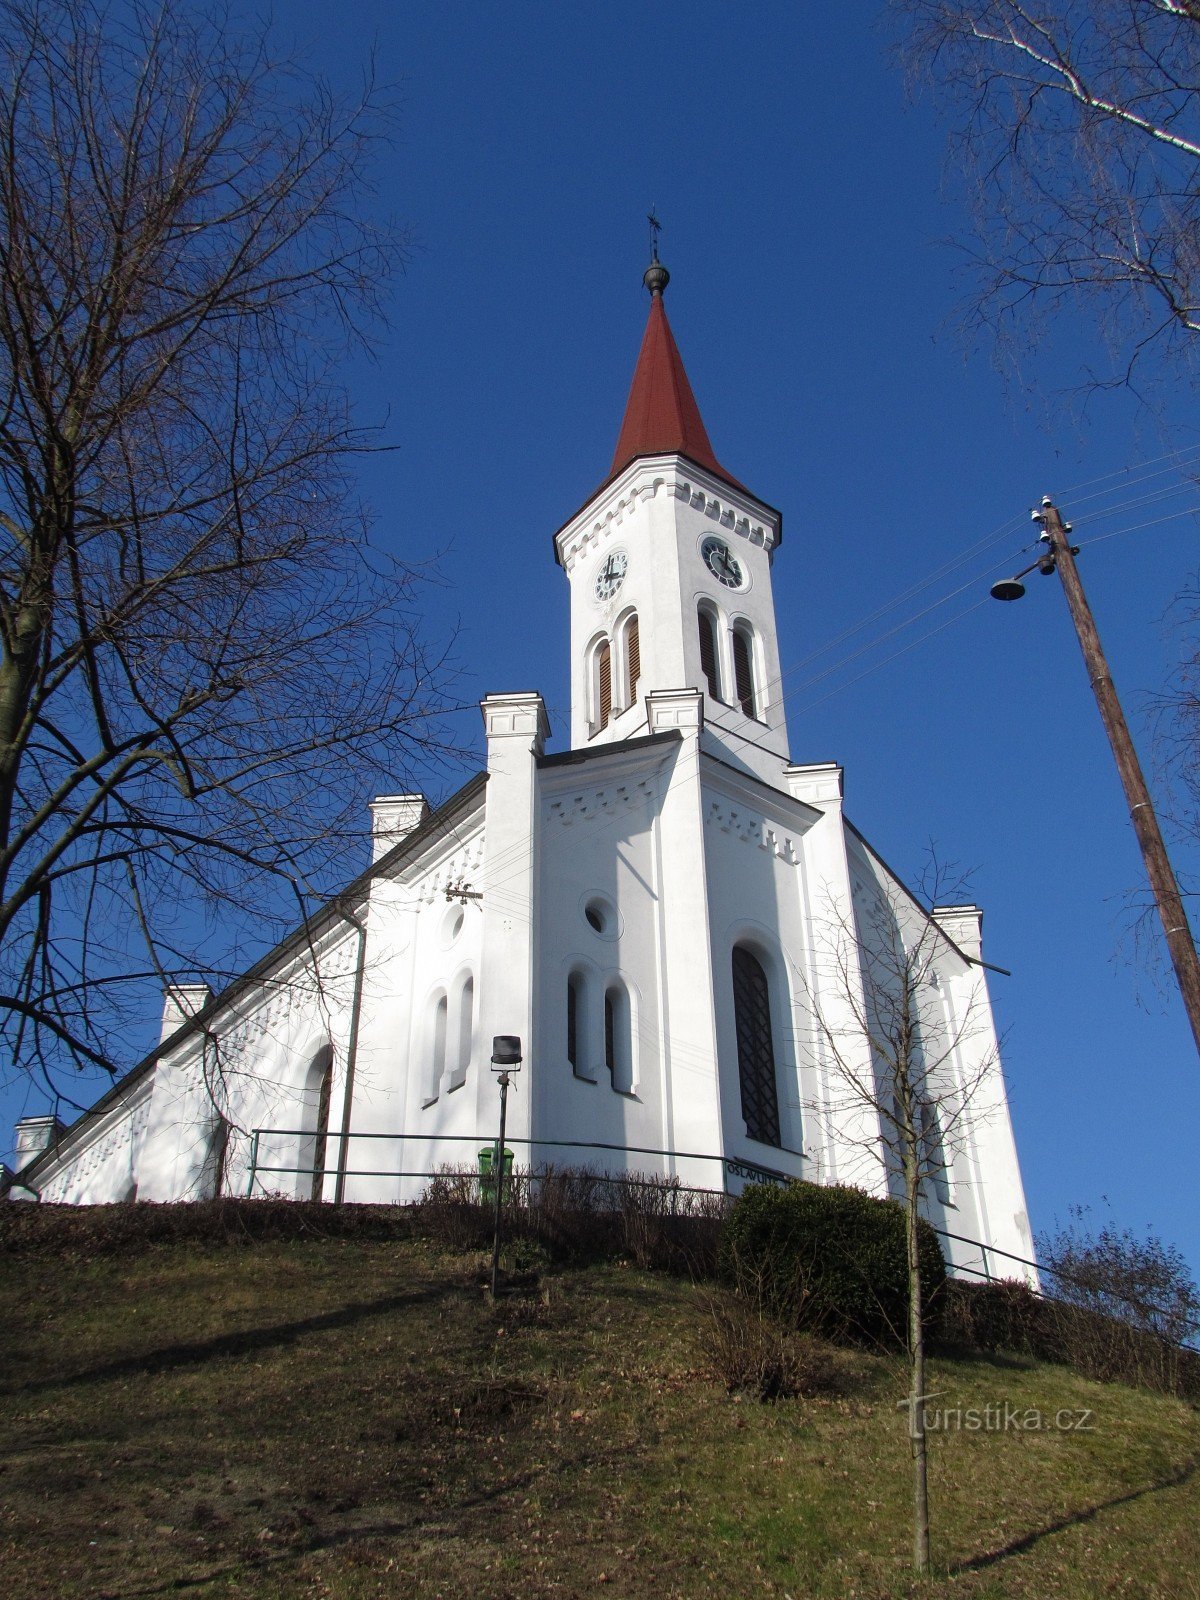 Zádveřice-Raková - iglesia evangélica